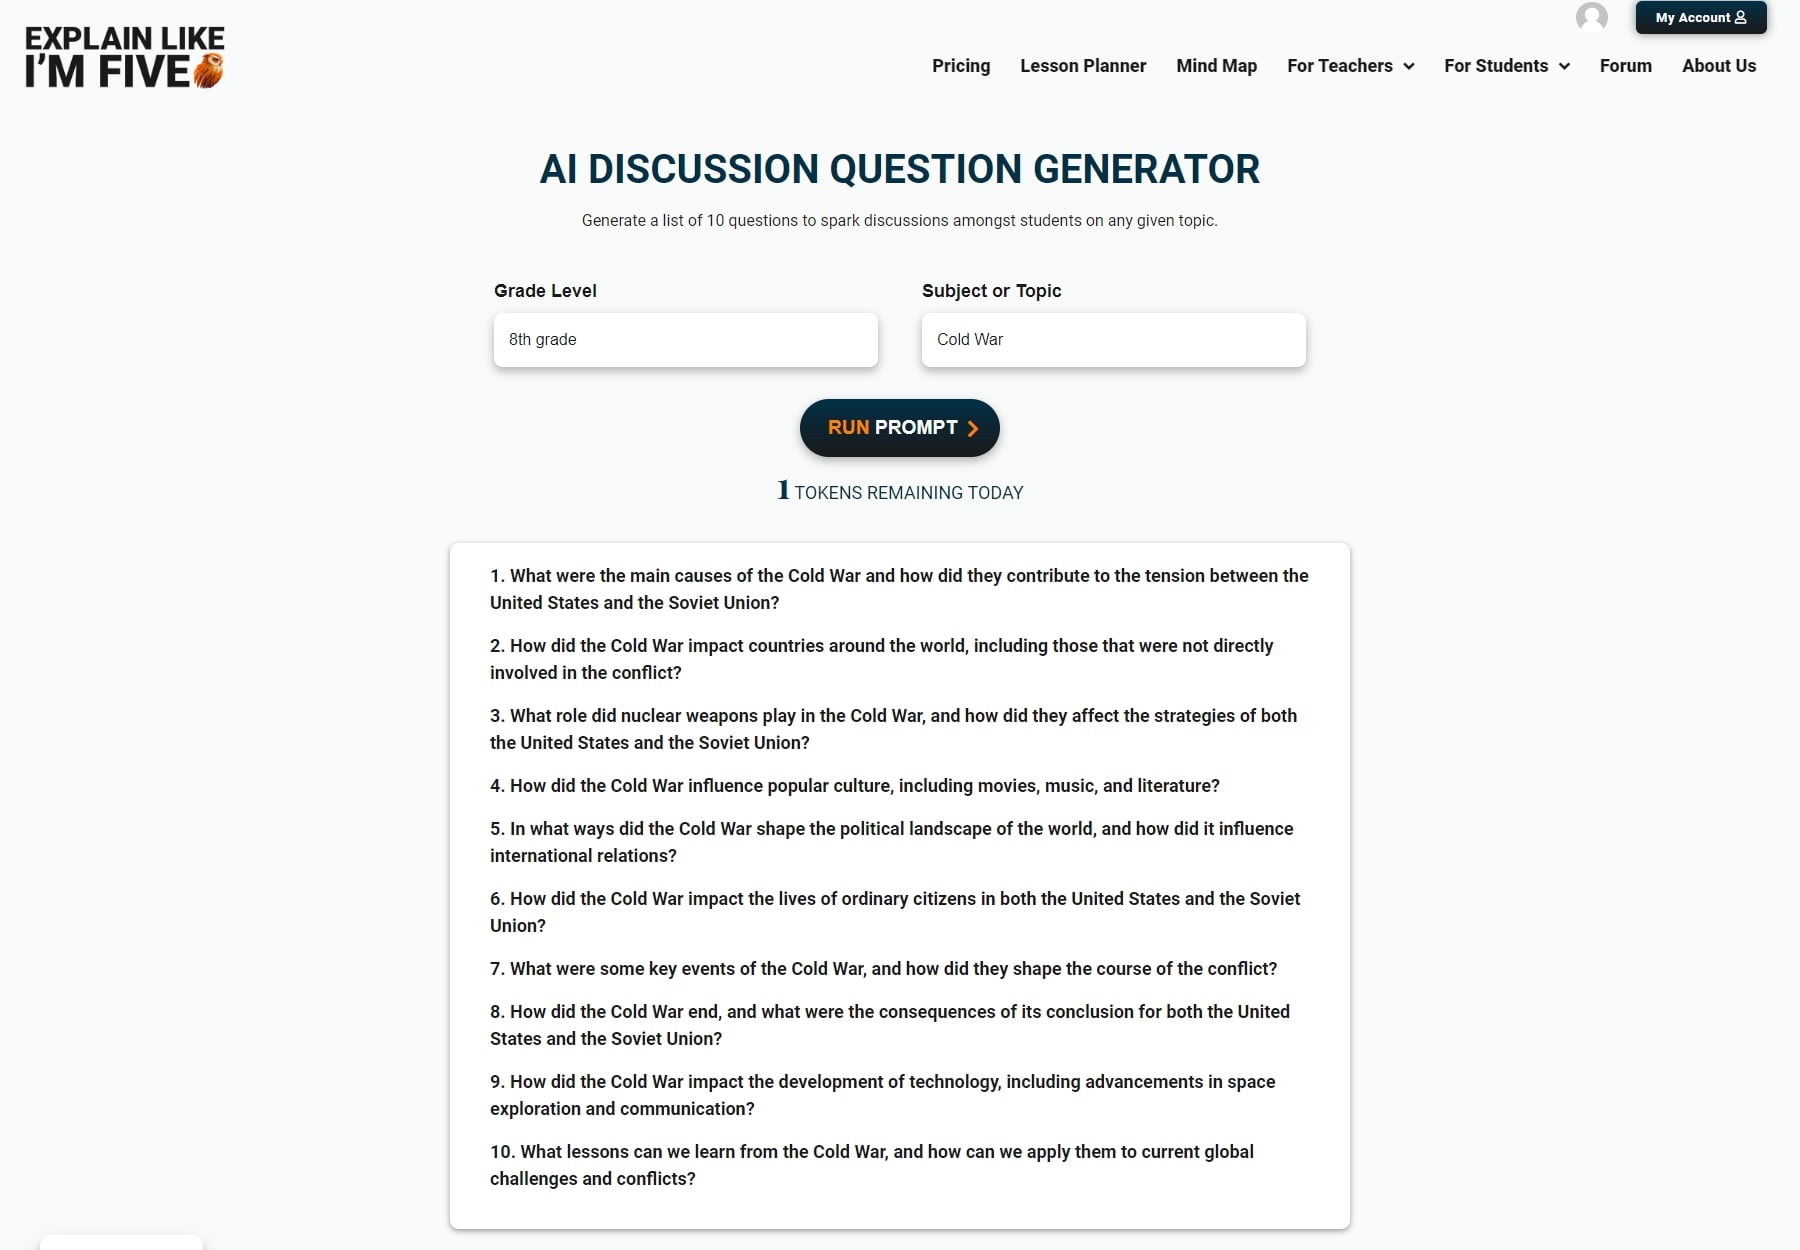 объяснение, как imfive.io, генератор вопросов для обсуждения